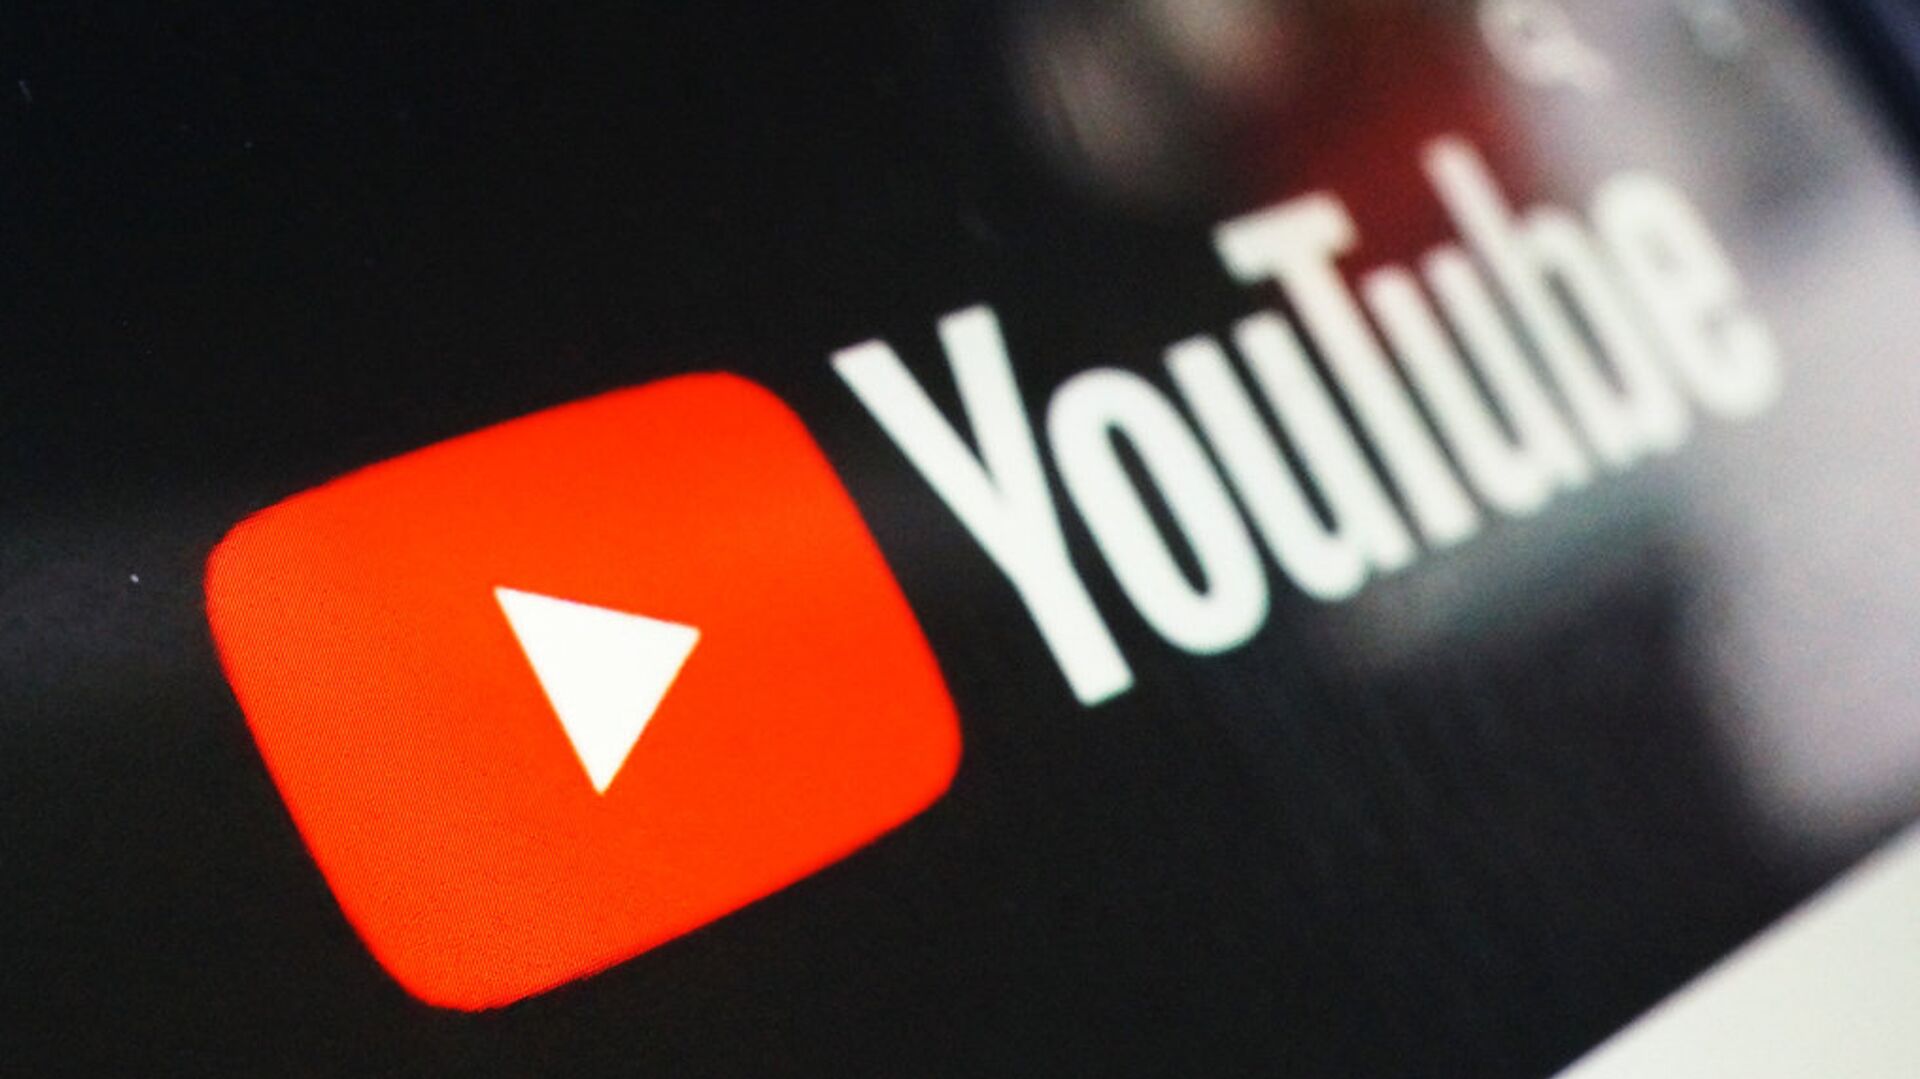 YouTube упростит отключение рекламы